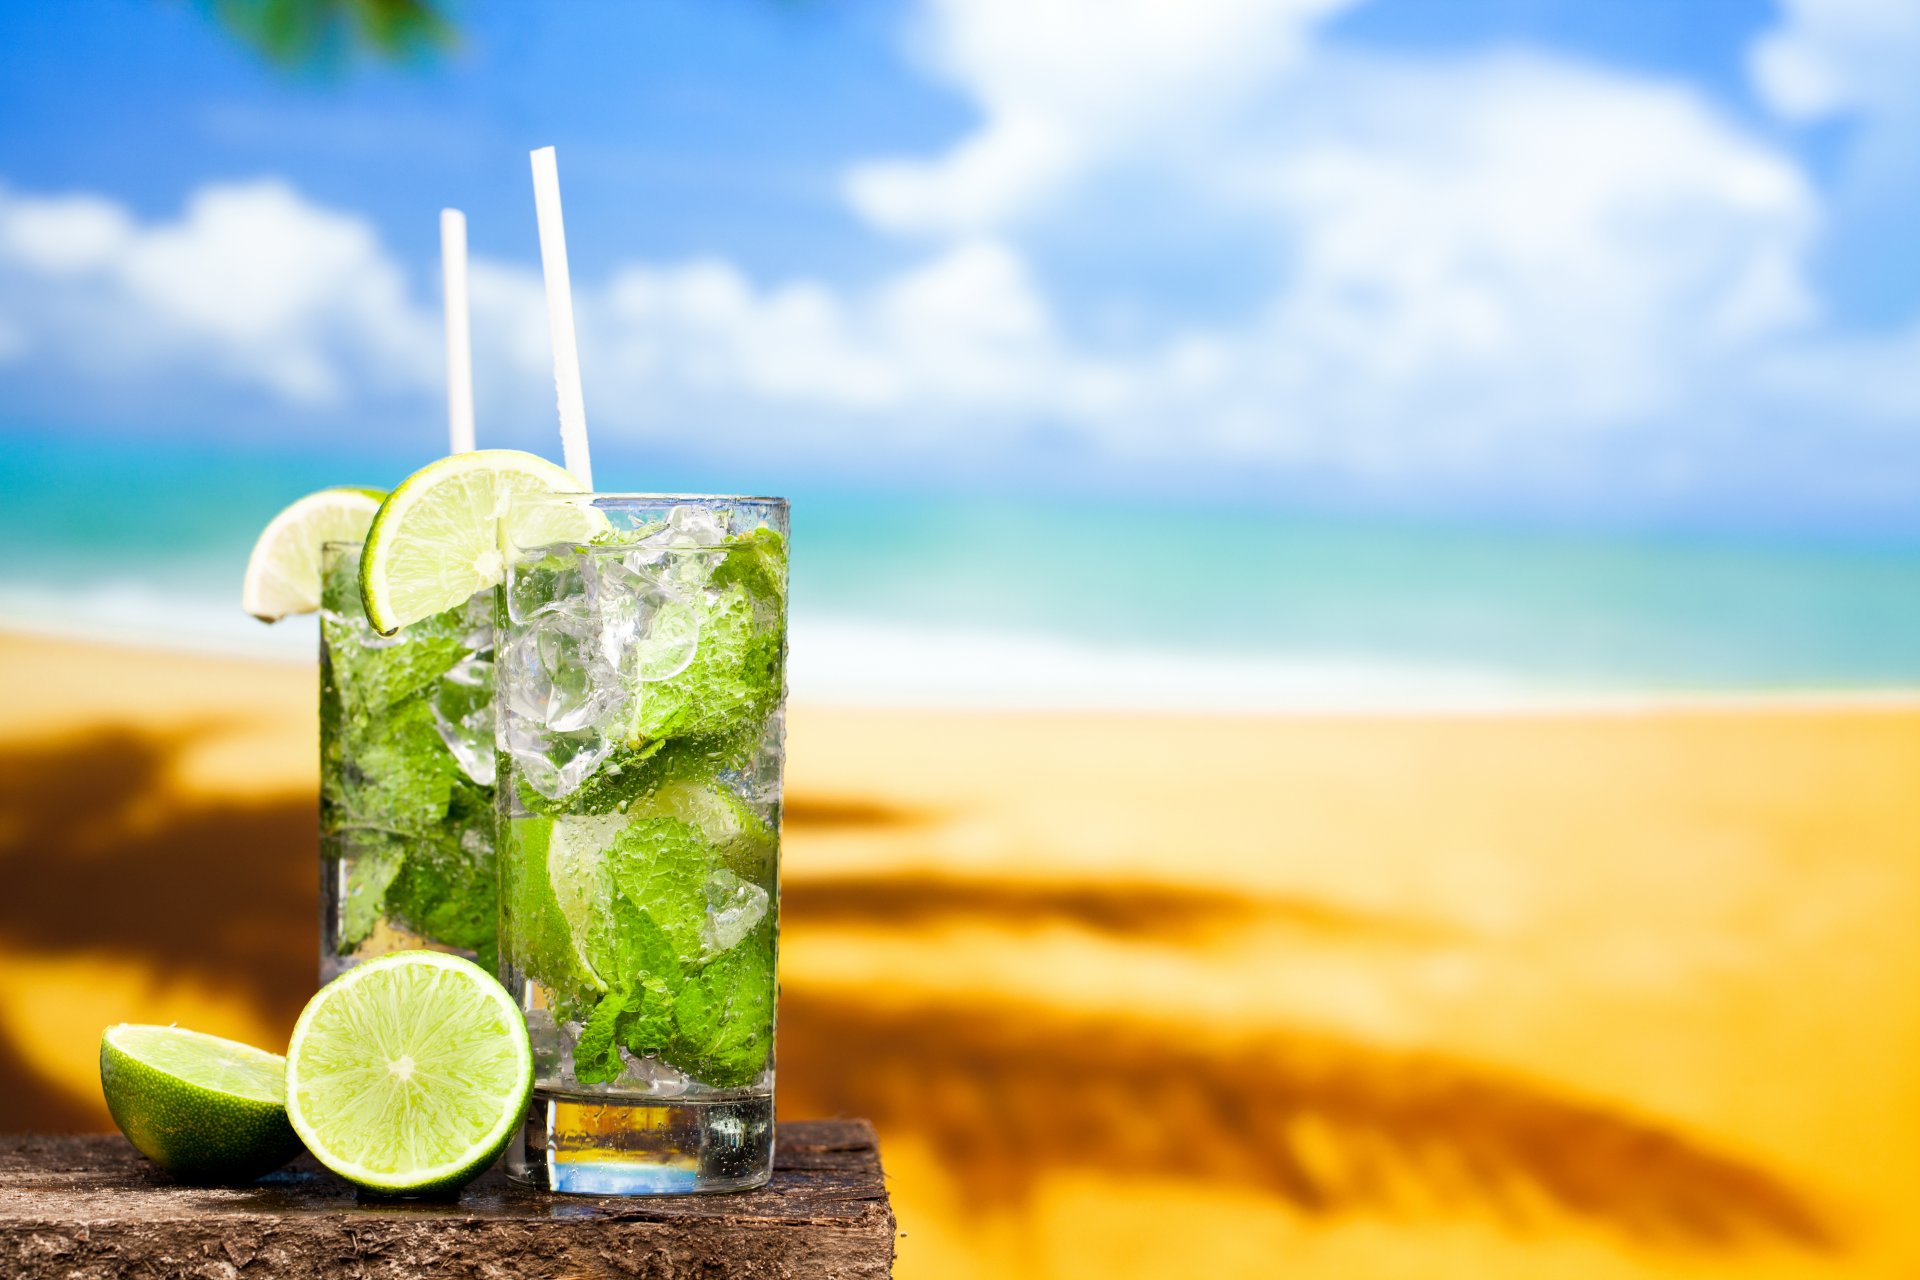 тропический коктейль мохито пьют известь свежие пляж солнце песок море лайм